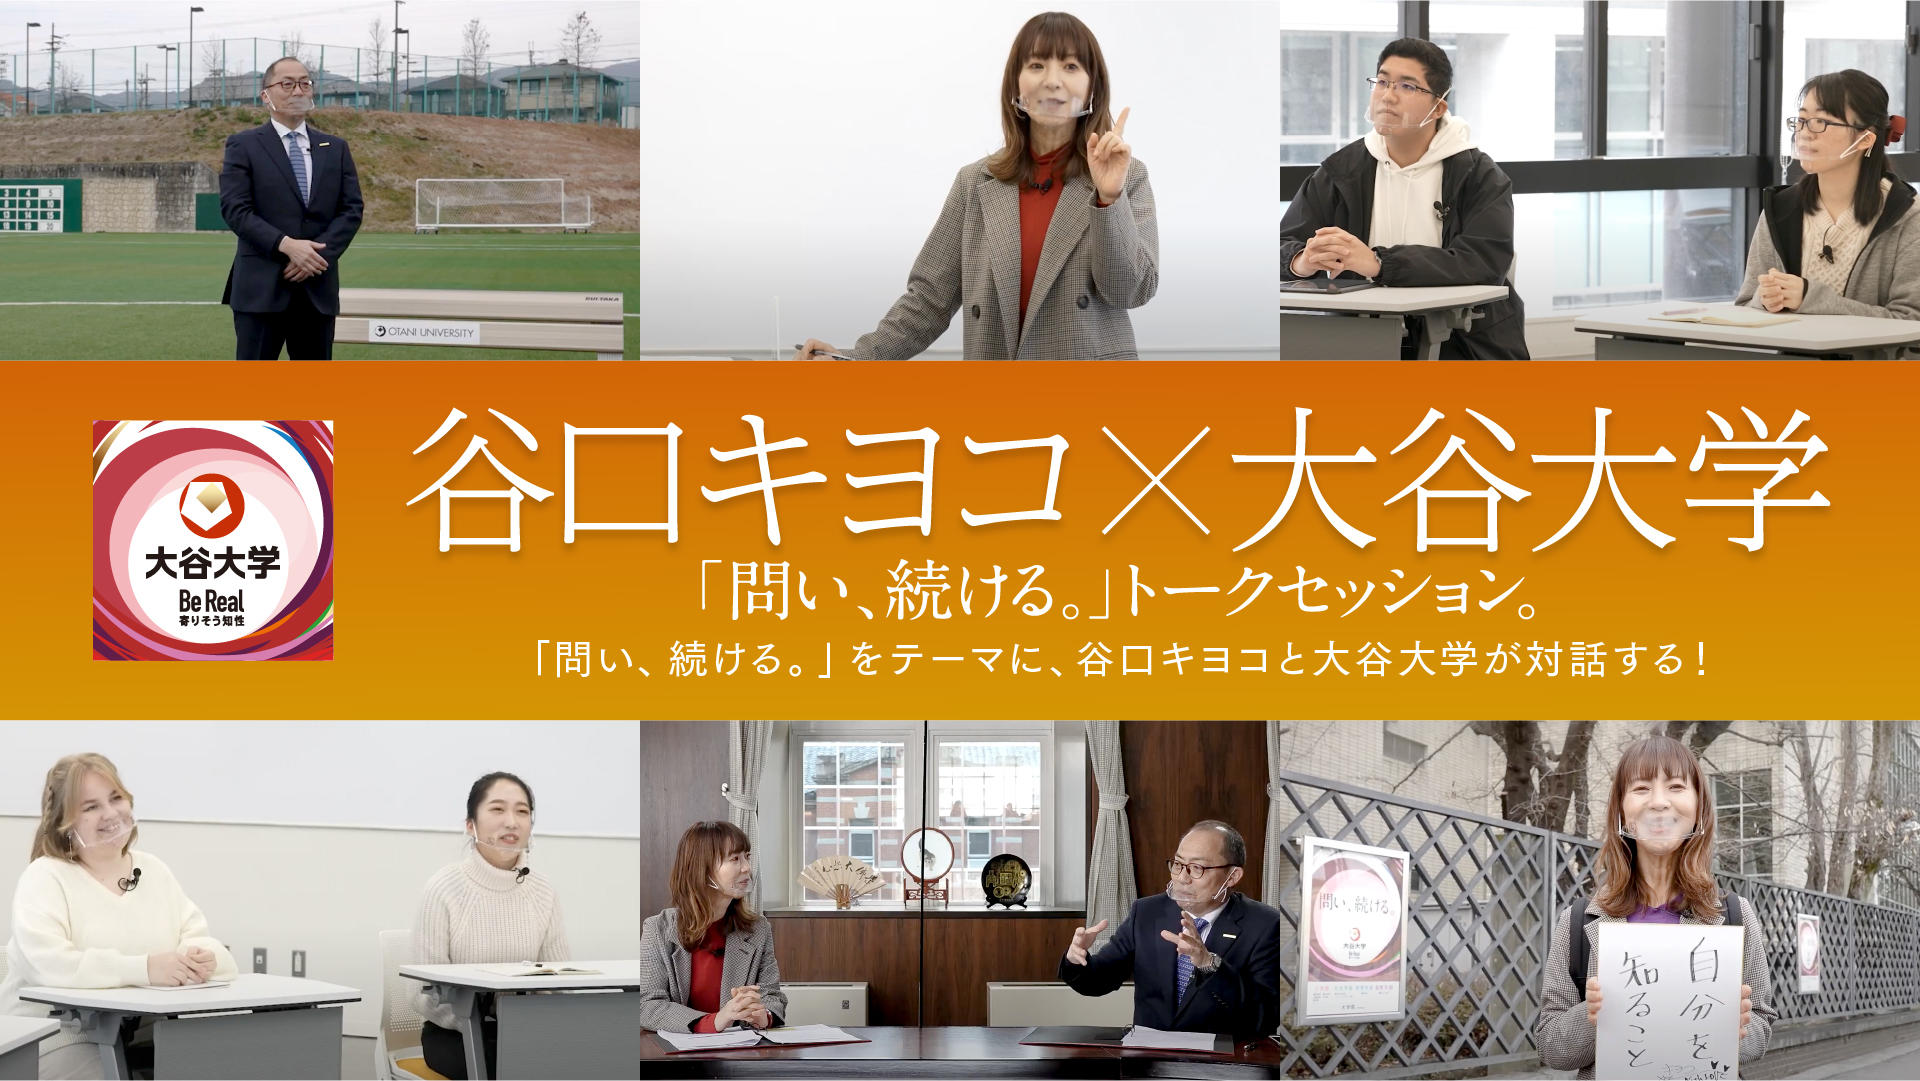 大谷大学が「関西ラジオDJ界の女王」谷口キヨコ氏とコラボした動画を制作 -- 学生とのトークや学長との対談を特設サイト「問い、続ける。」で公開